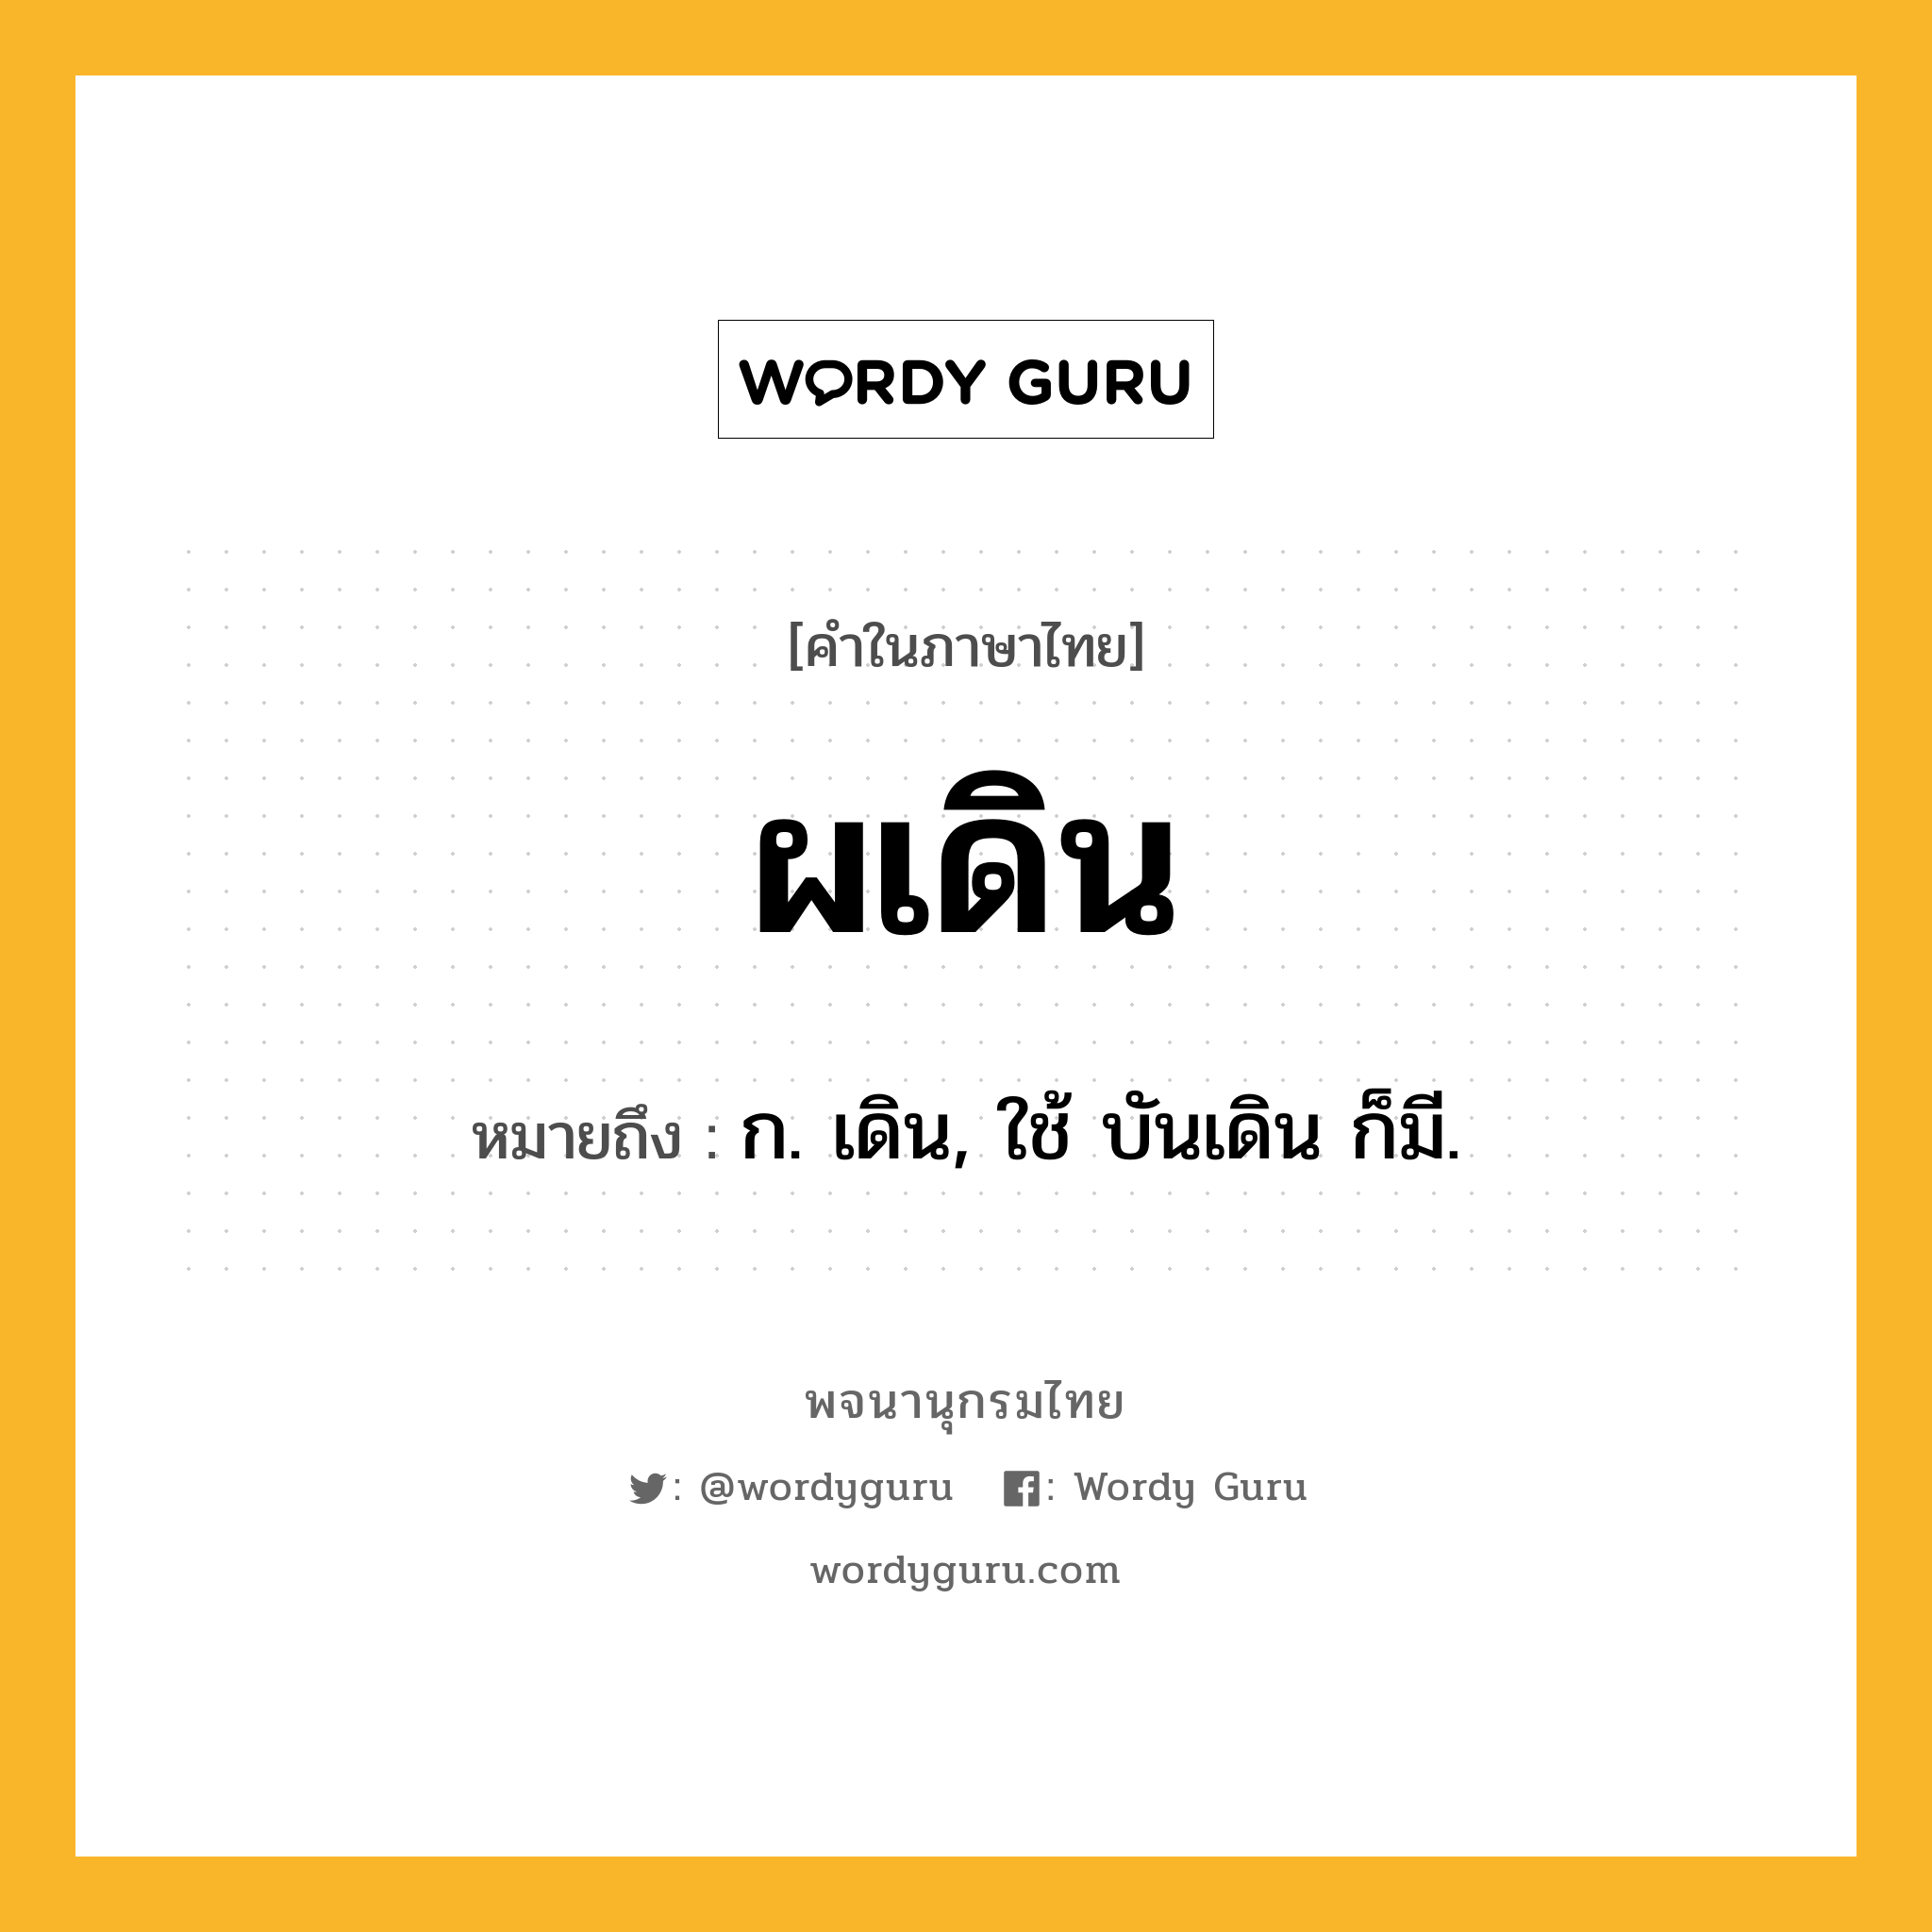 ผเดิน ความหมาย หมายถึงอะไร?, คำในภาษาไทย ผเดิน หมายถึง ก. เดิน, ใช้ บันเดิน ก็มี.